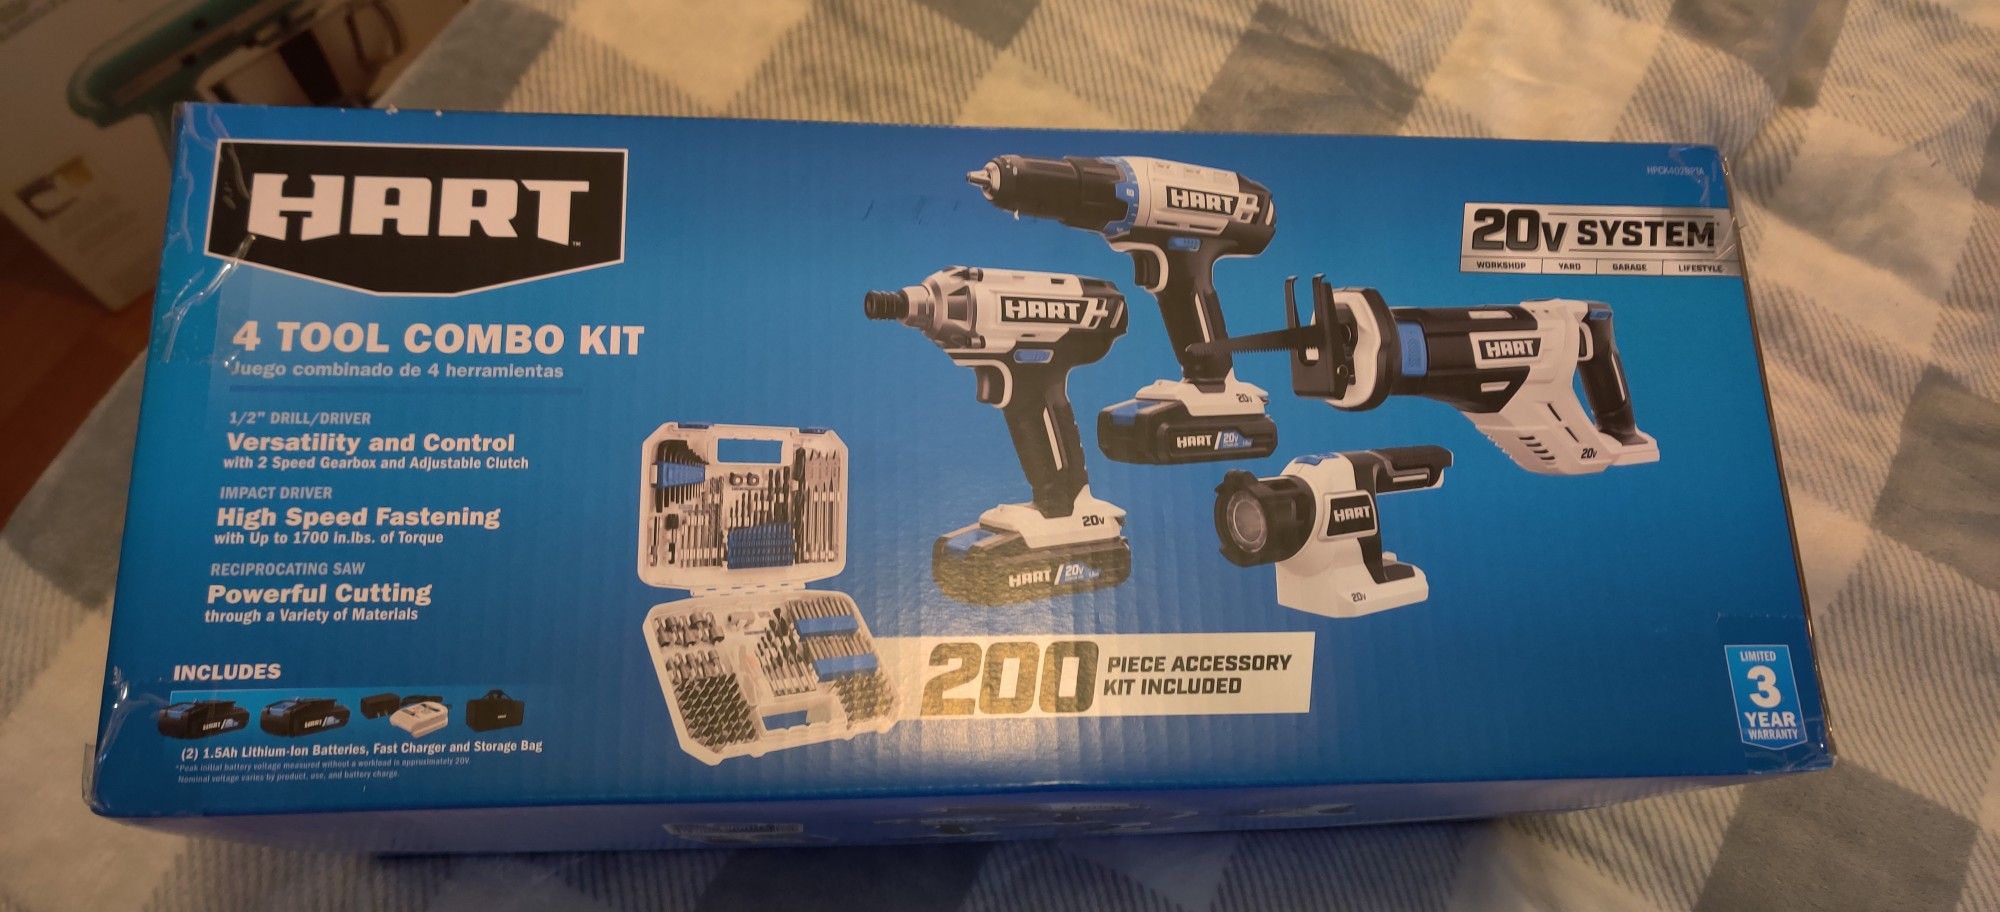 Hart Combo tool kit